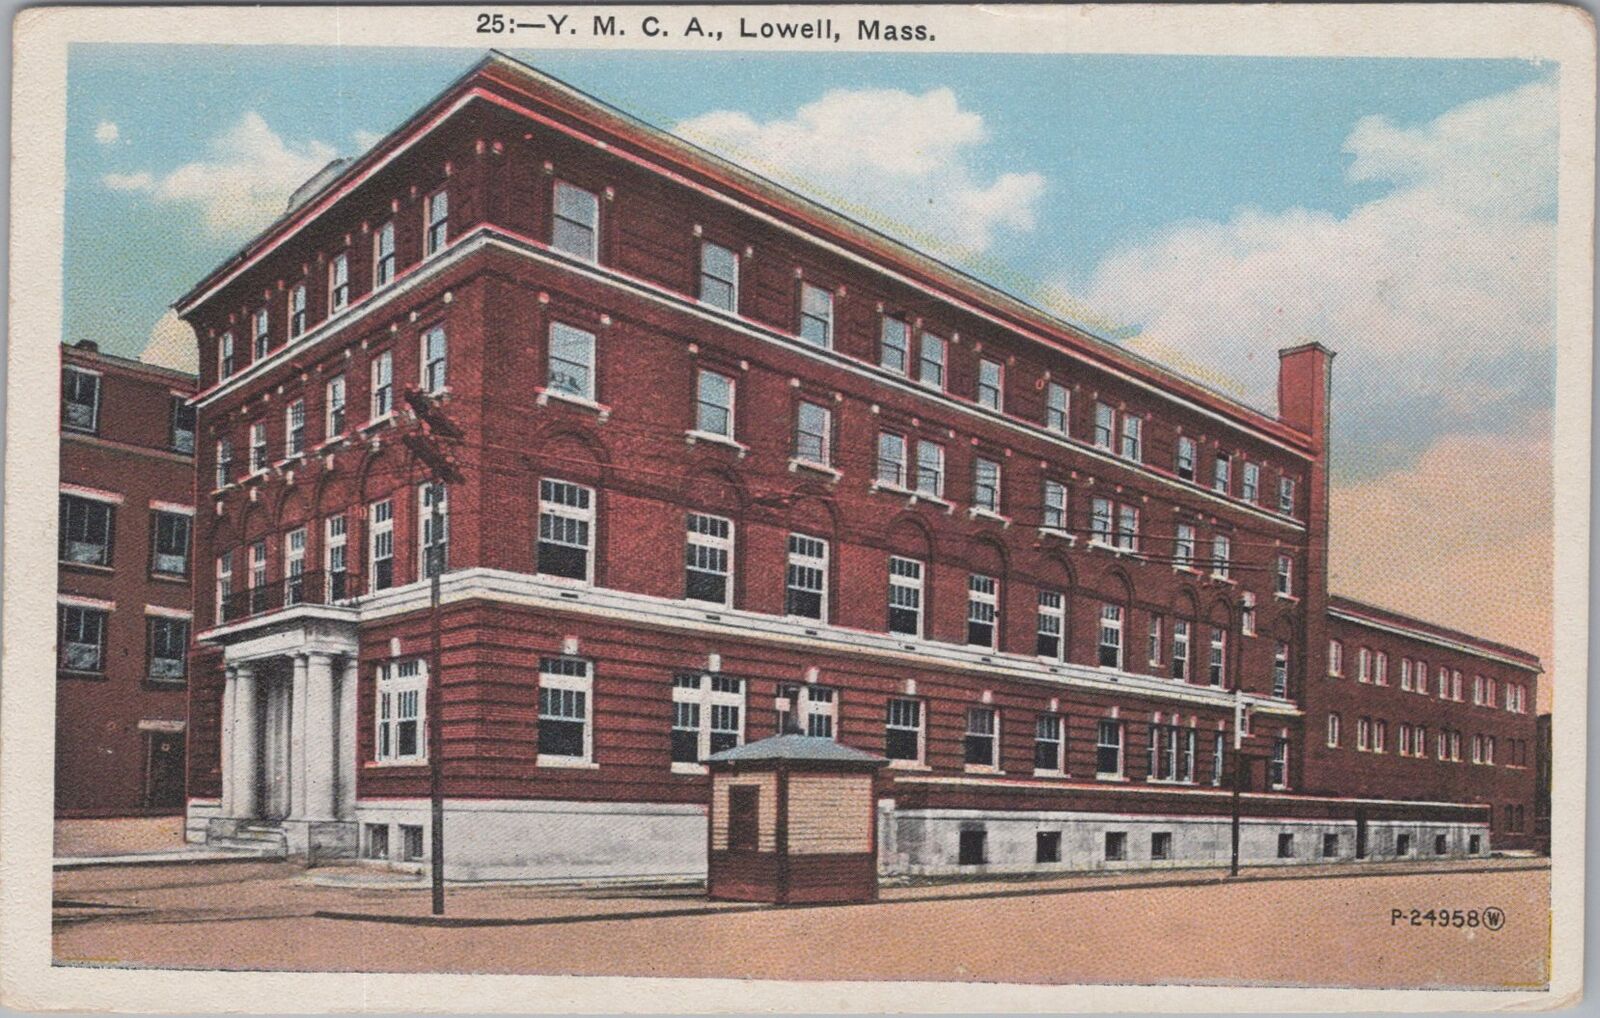 Y.M.C.A., Lowell, Massachusetts  Postcard